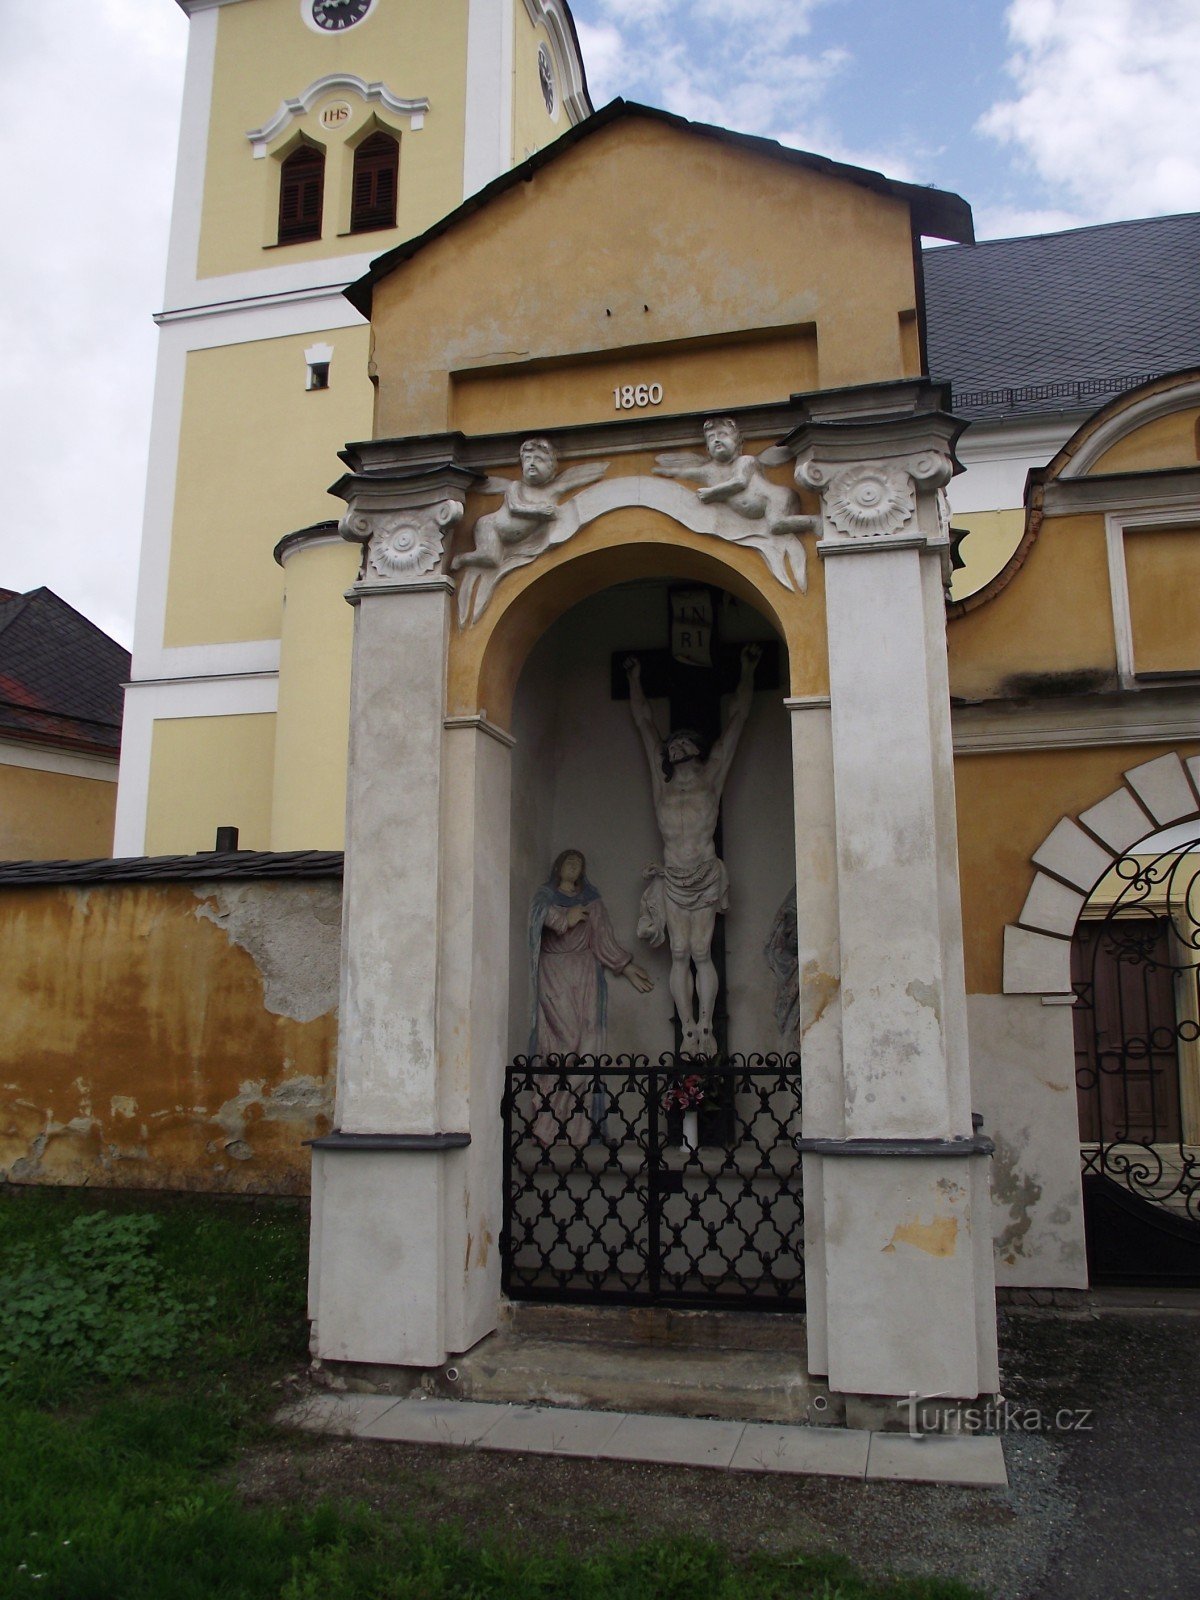 Moravičany – egy (nem csak kis) műemlékekkel teli falu